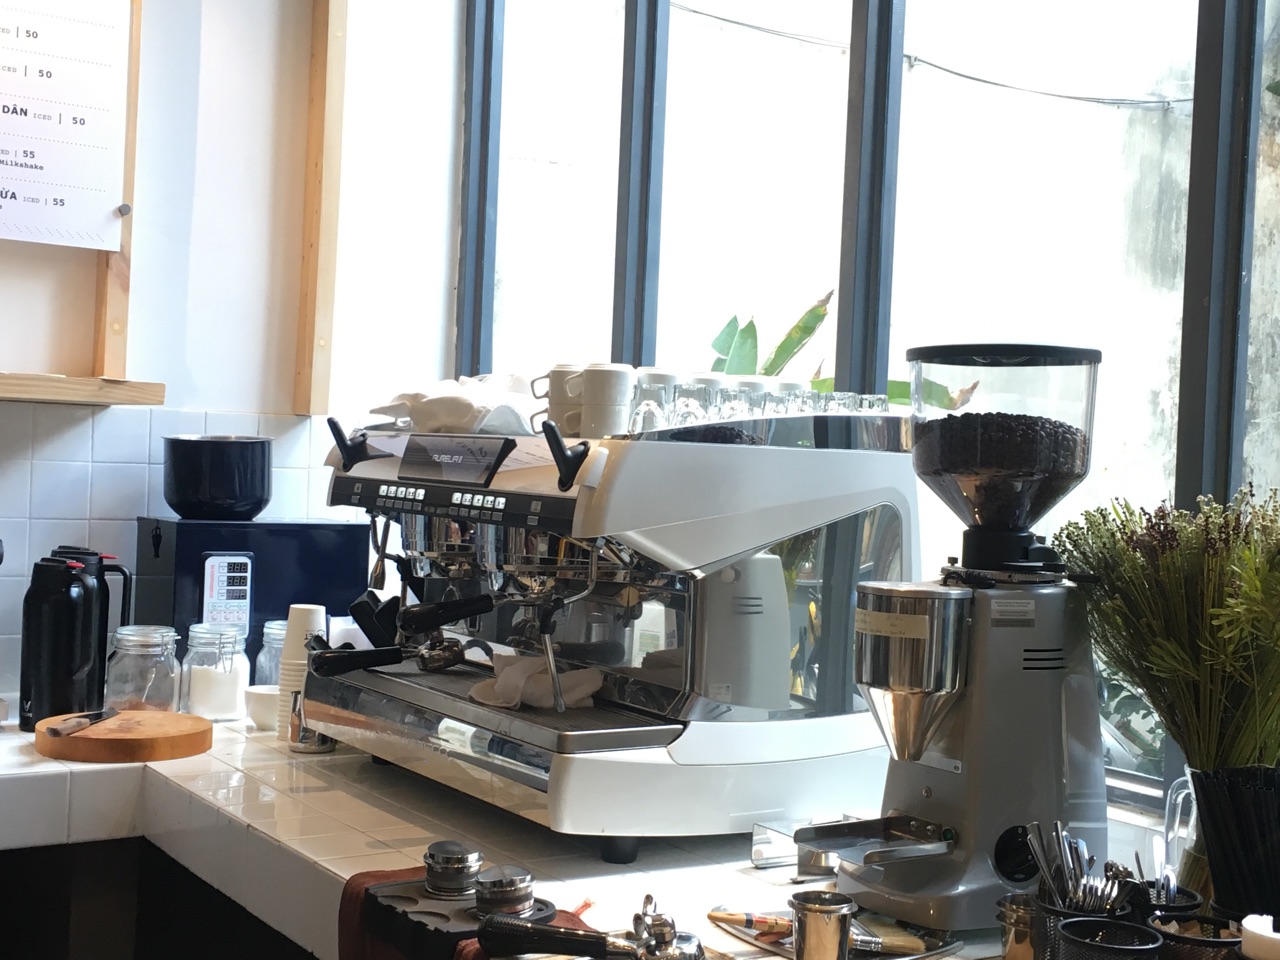 3 Loại máy pha cà phê chuyên nghiệp – Chiếm lĩnh thị trường tại Việt Nam